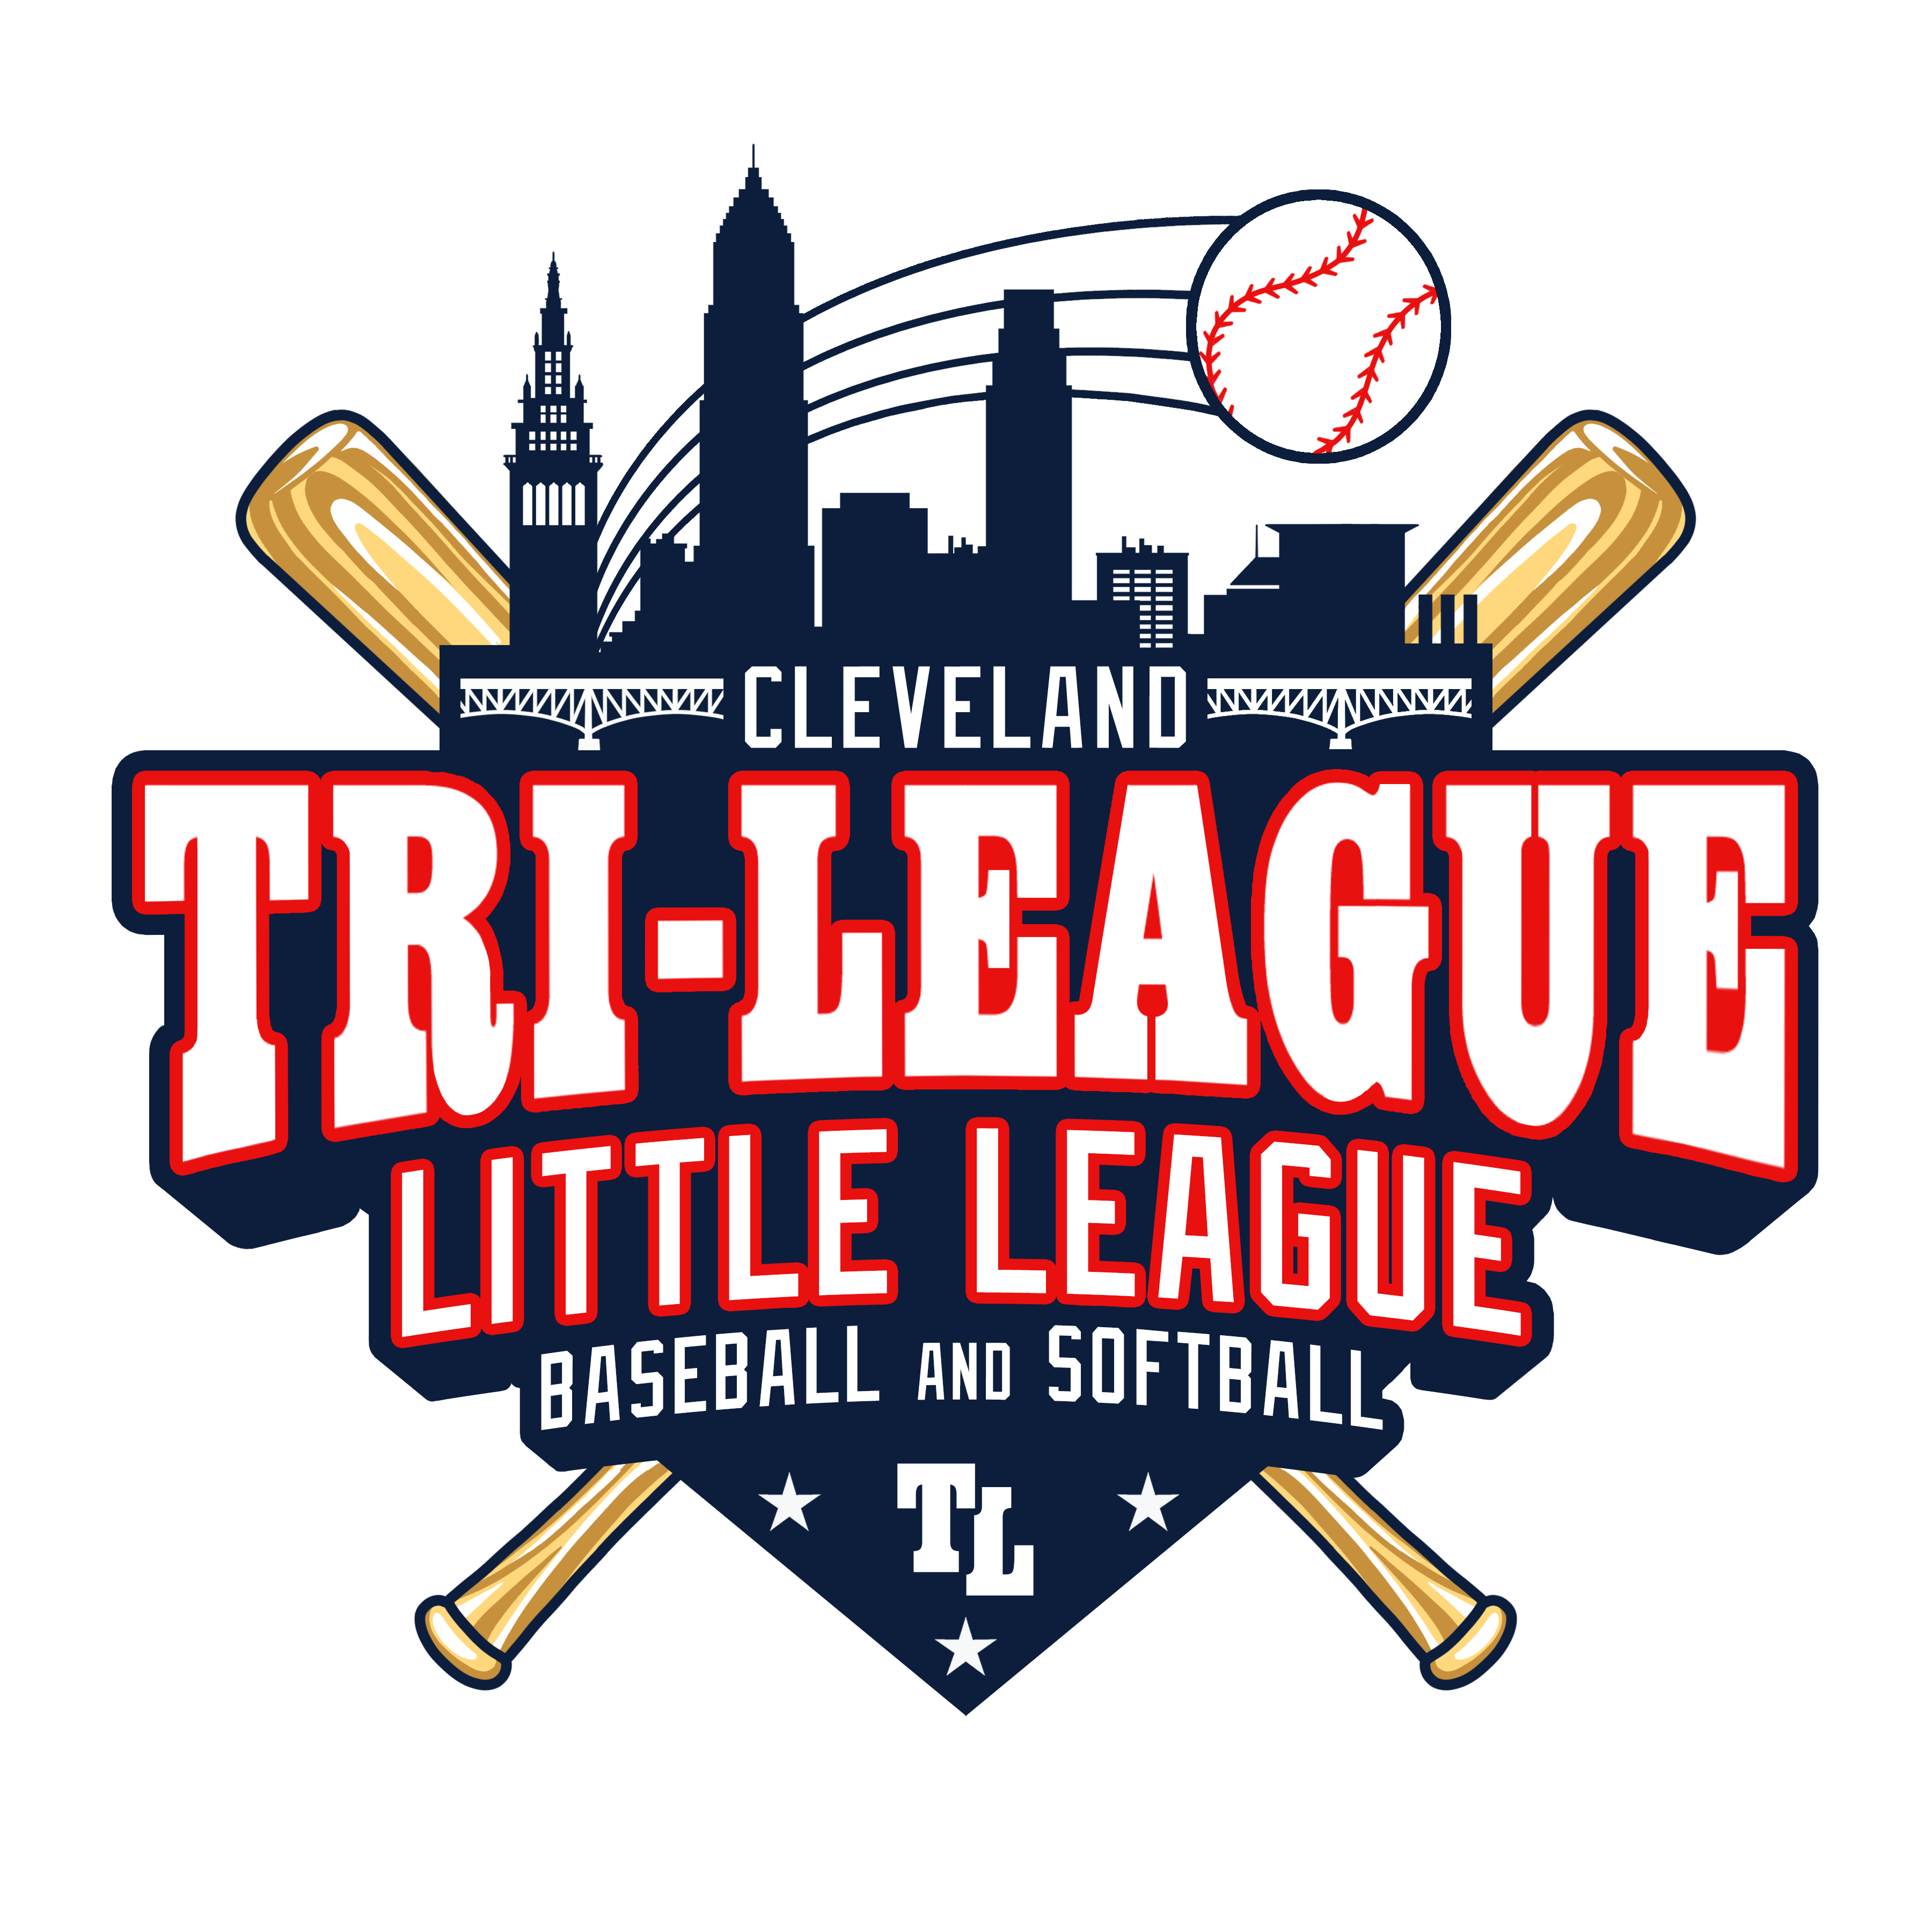 Tri-League Little League logo